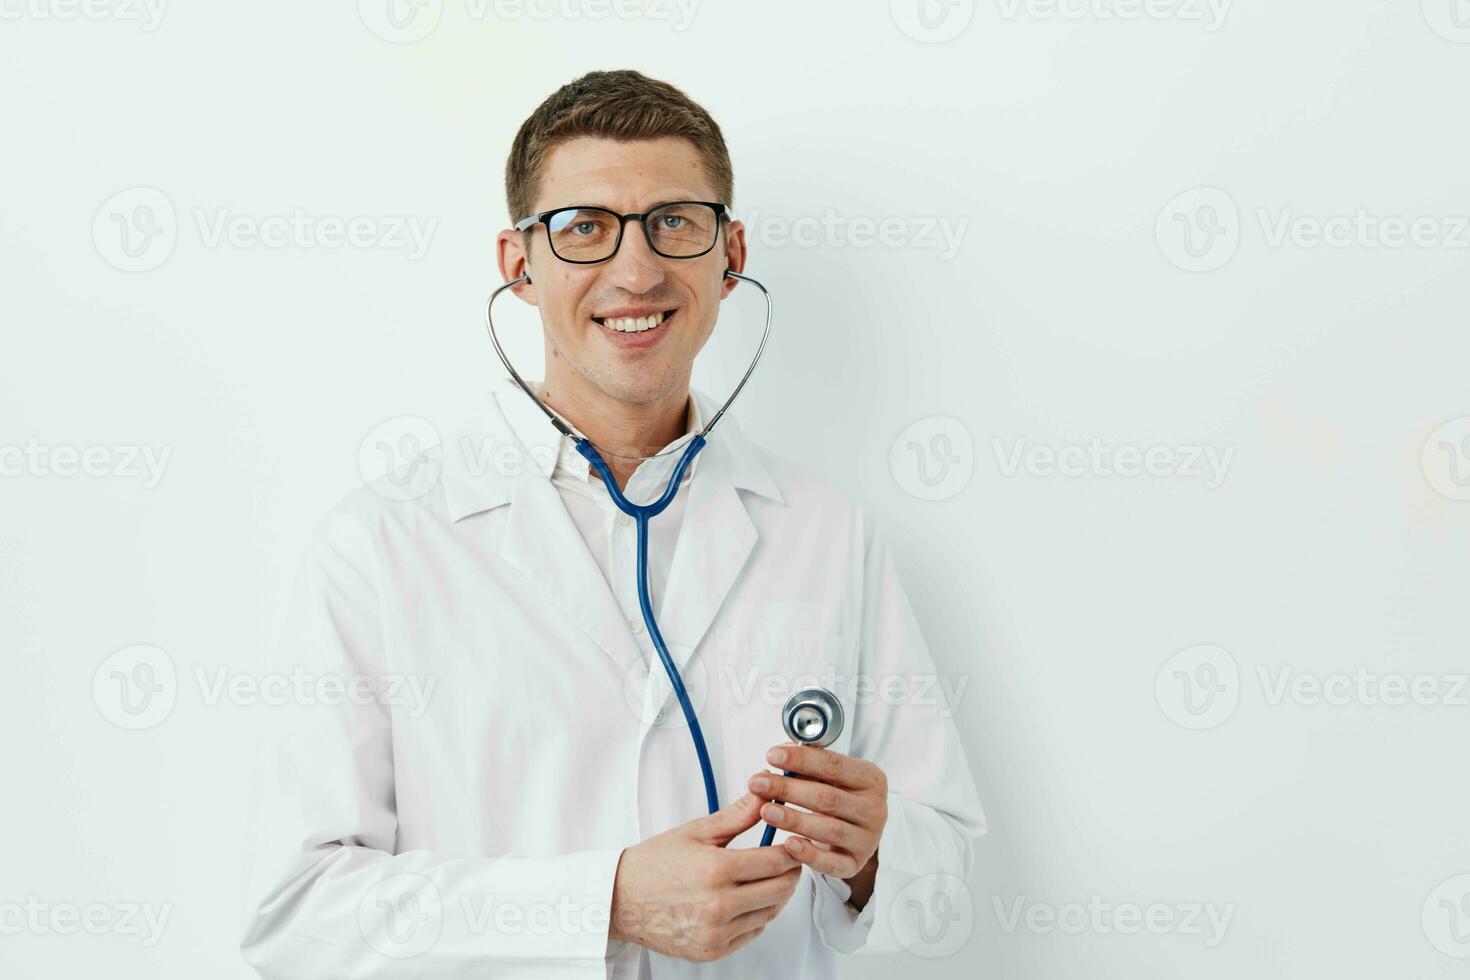 hombres joven hospital profesional contento especialista estetoscopio cuidado ocupación retrato persona foto